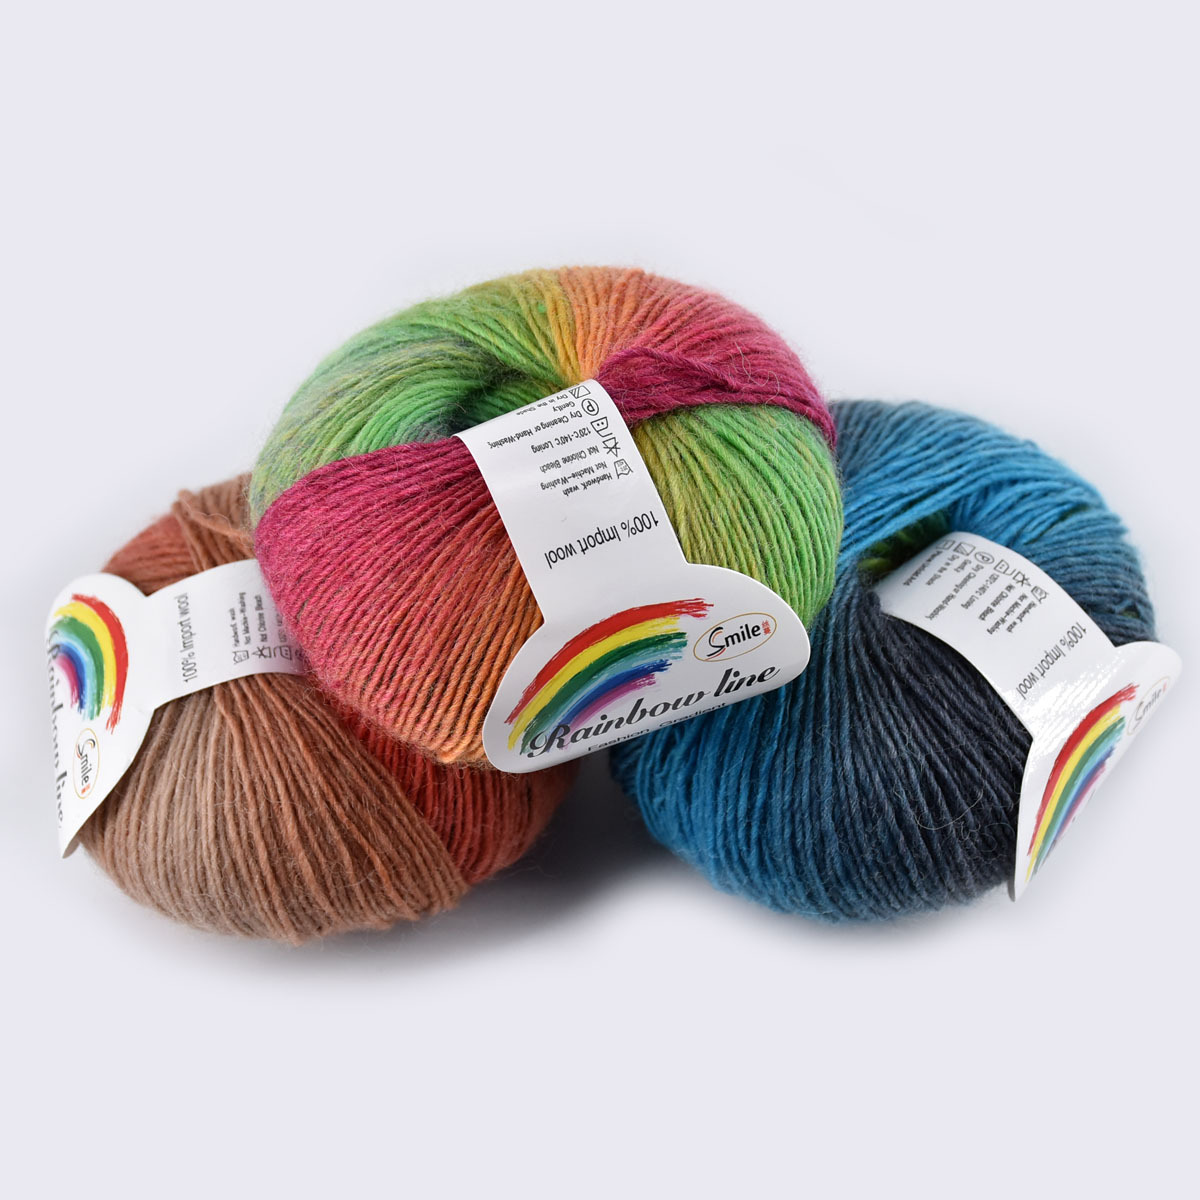 Soft Knitting Yarn Skeins Wool Rainbow Craft Yarn Multicolor Yarn